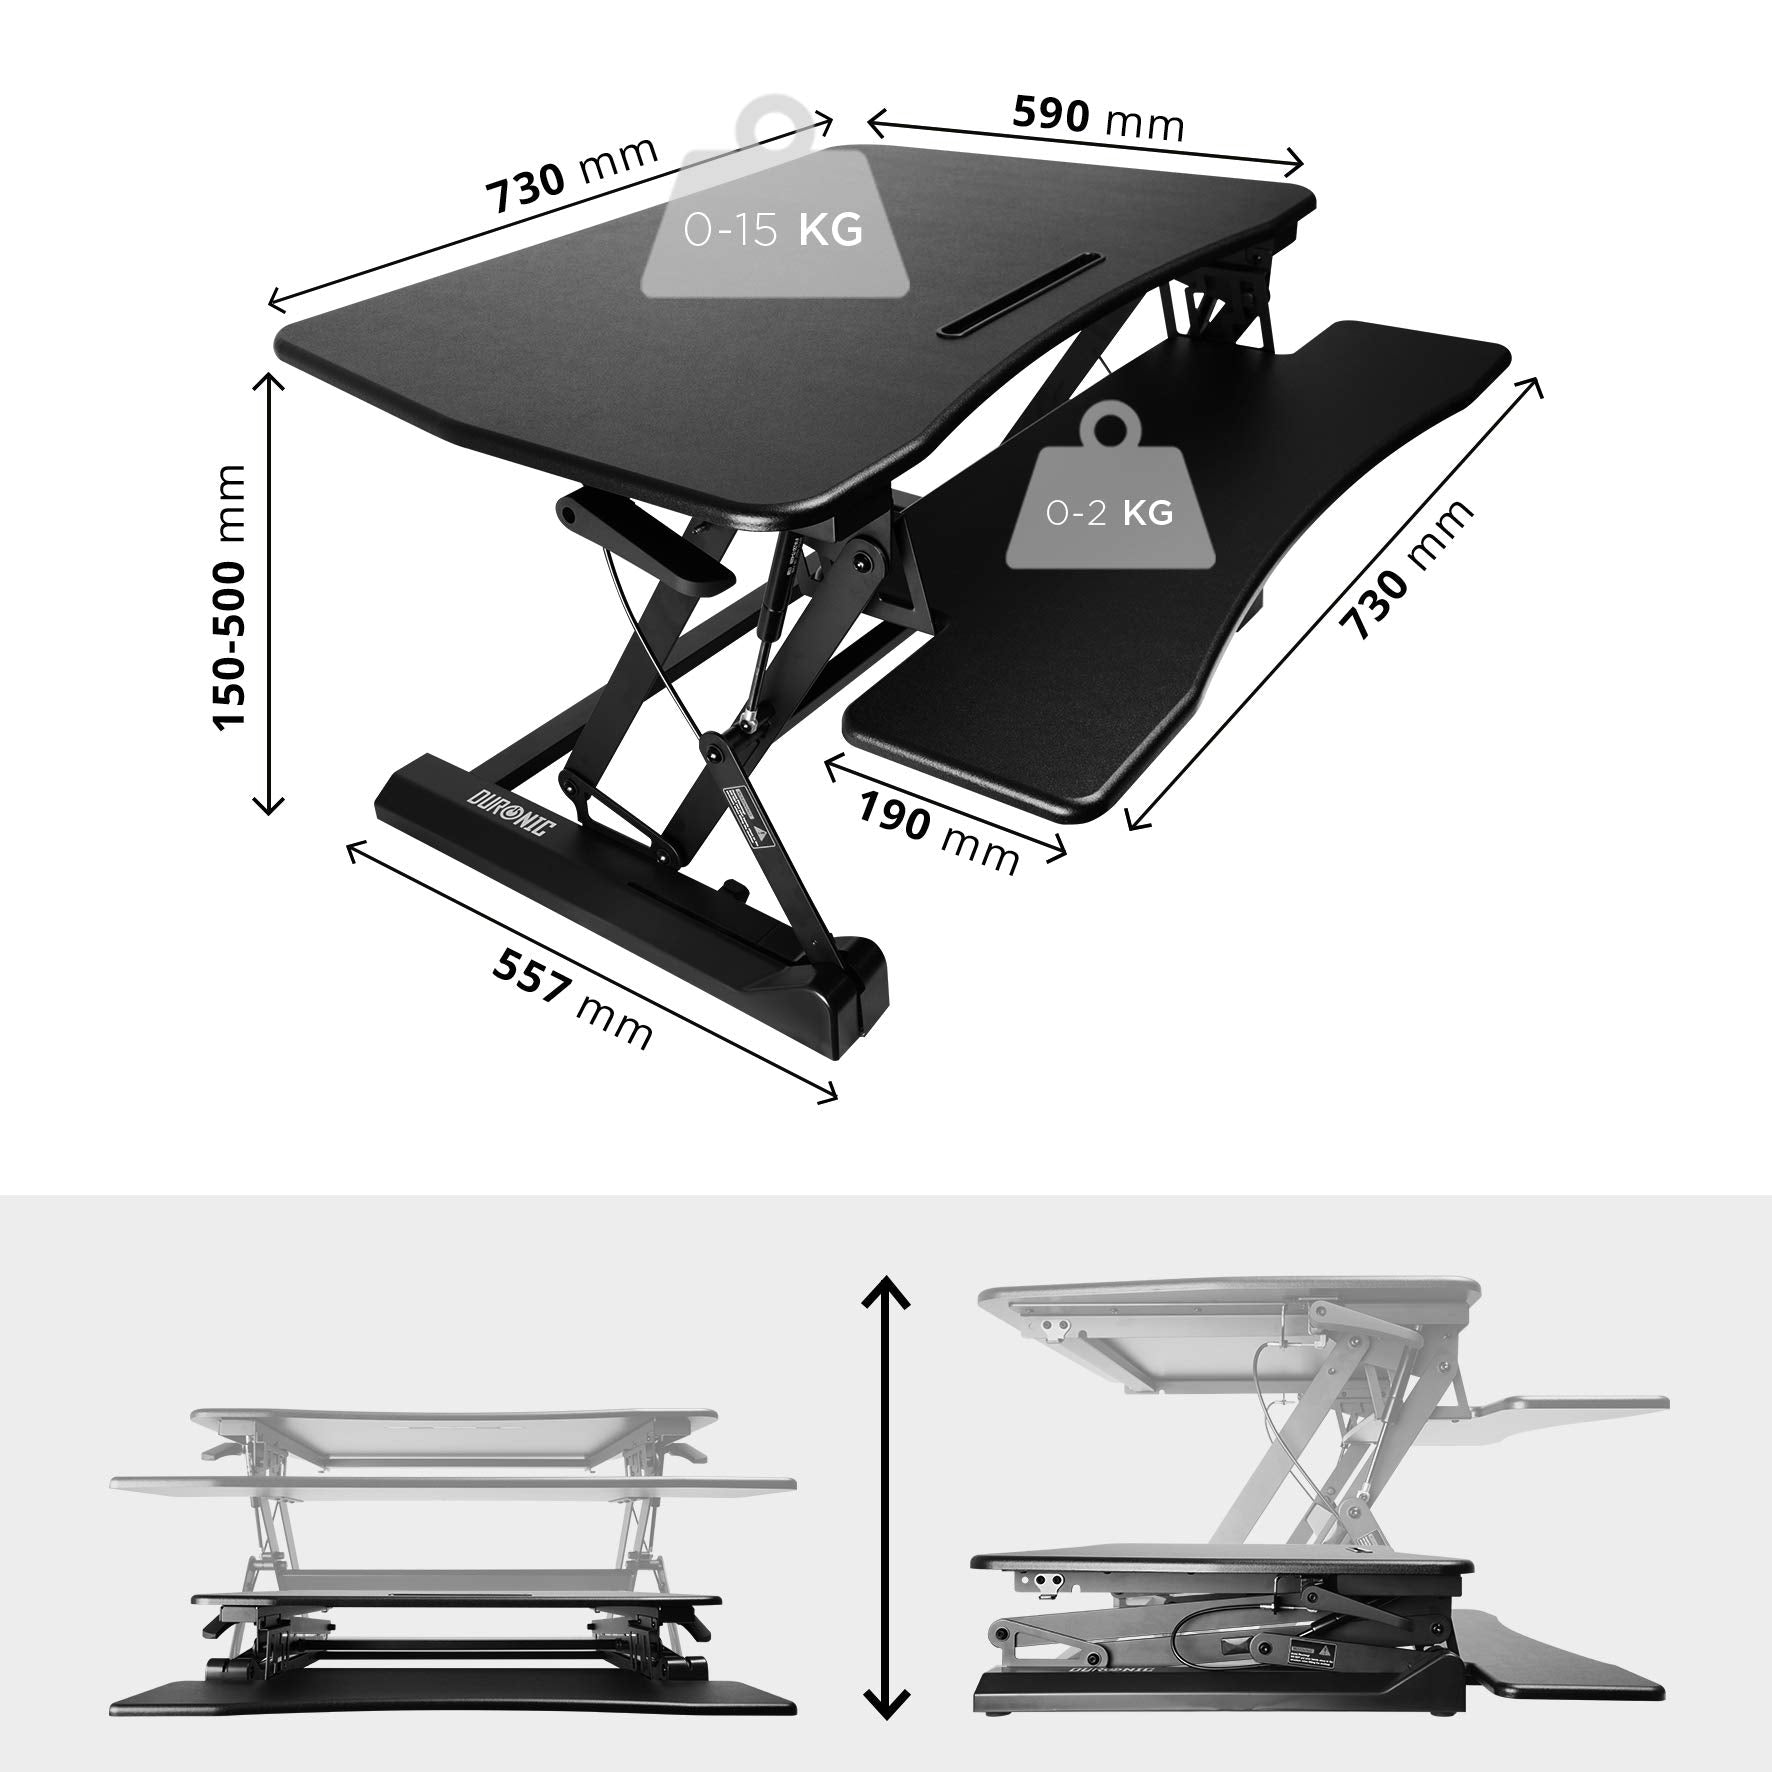 DURONIC DM05D4 Workstation | Sitz-Steh Computertisch | Höhenverstellbarer 15 50 cm bis Tisch | Schreibtisch Höhenverstellbar